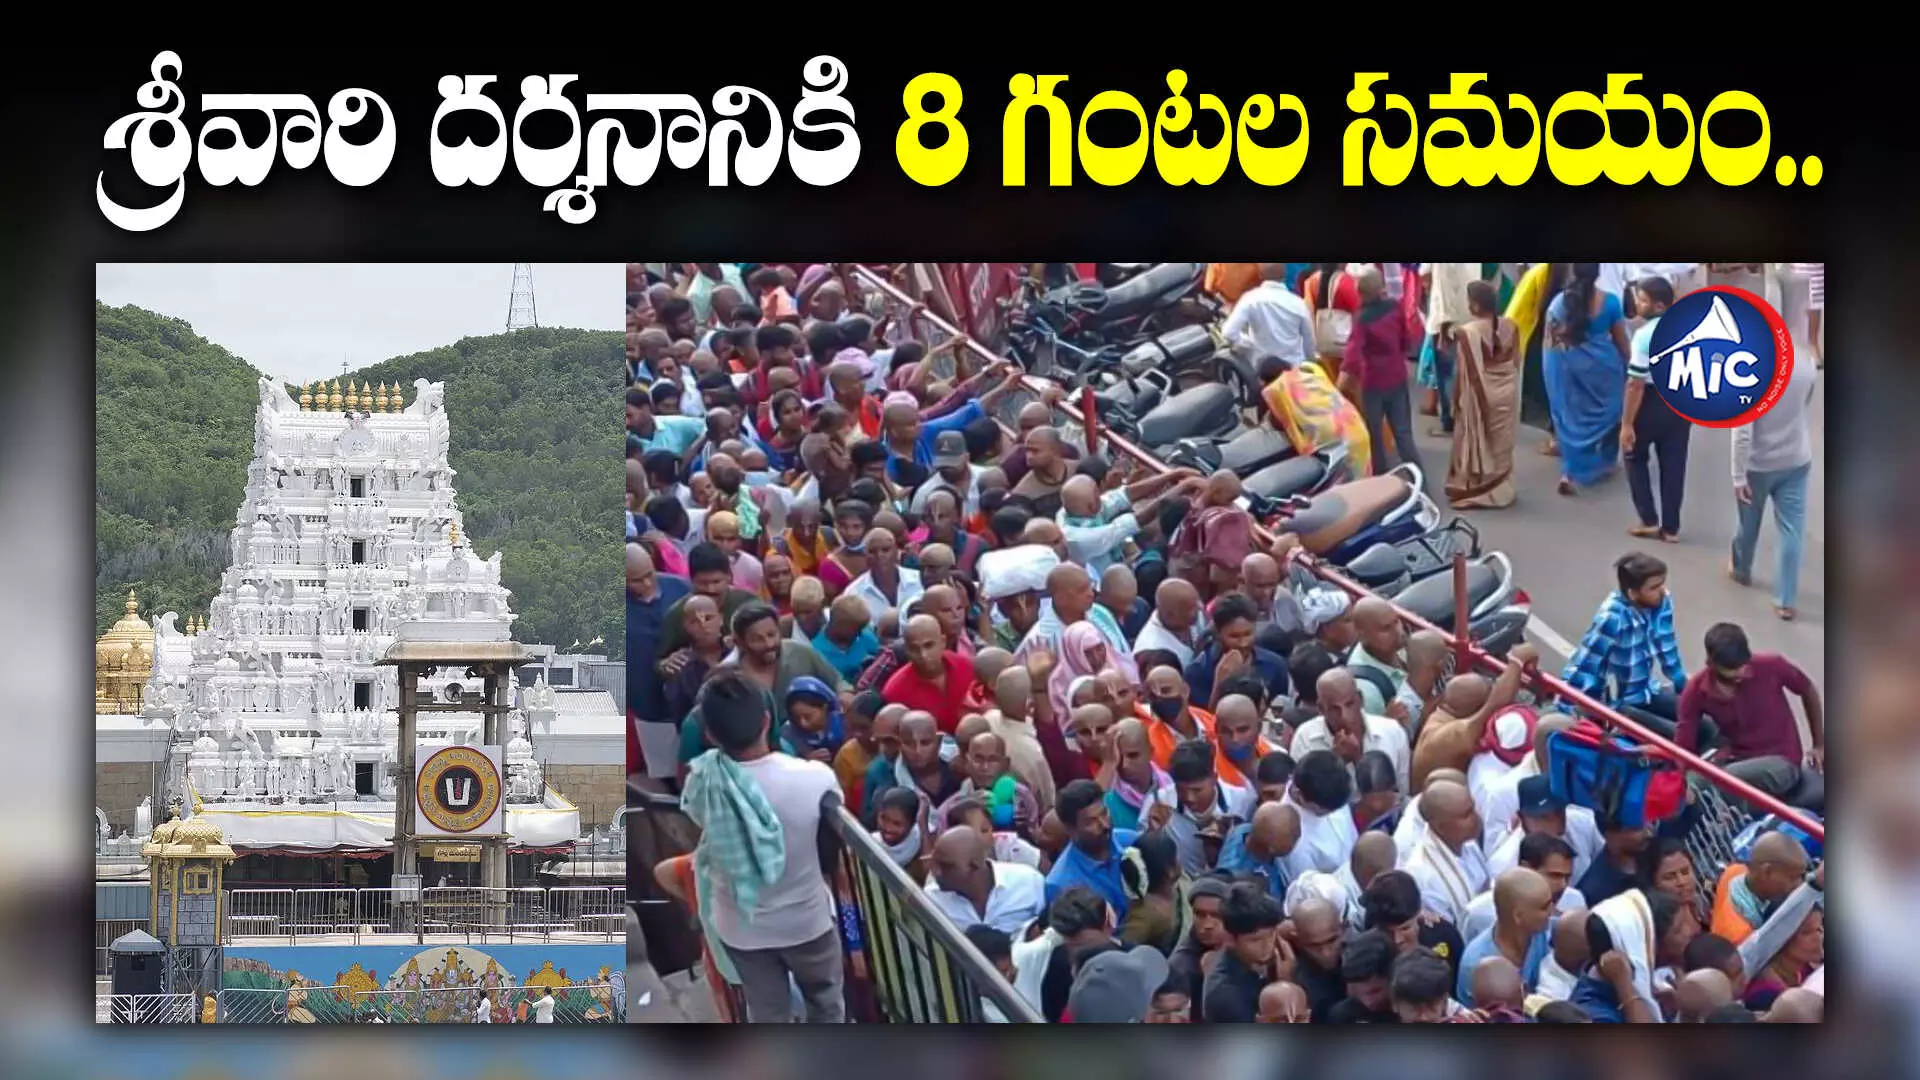 Tirupati : తిరుమలలో పెరిగిన భక్తుల రద్దీ..సర్వ దర్శనానికి 8 గంటల సమయం